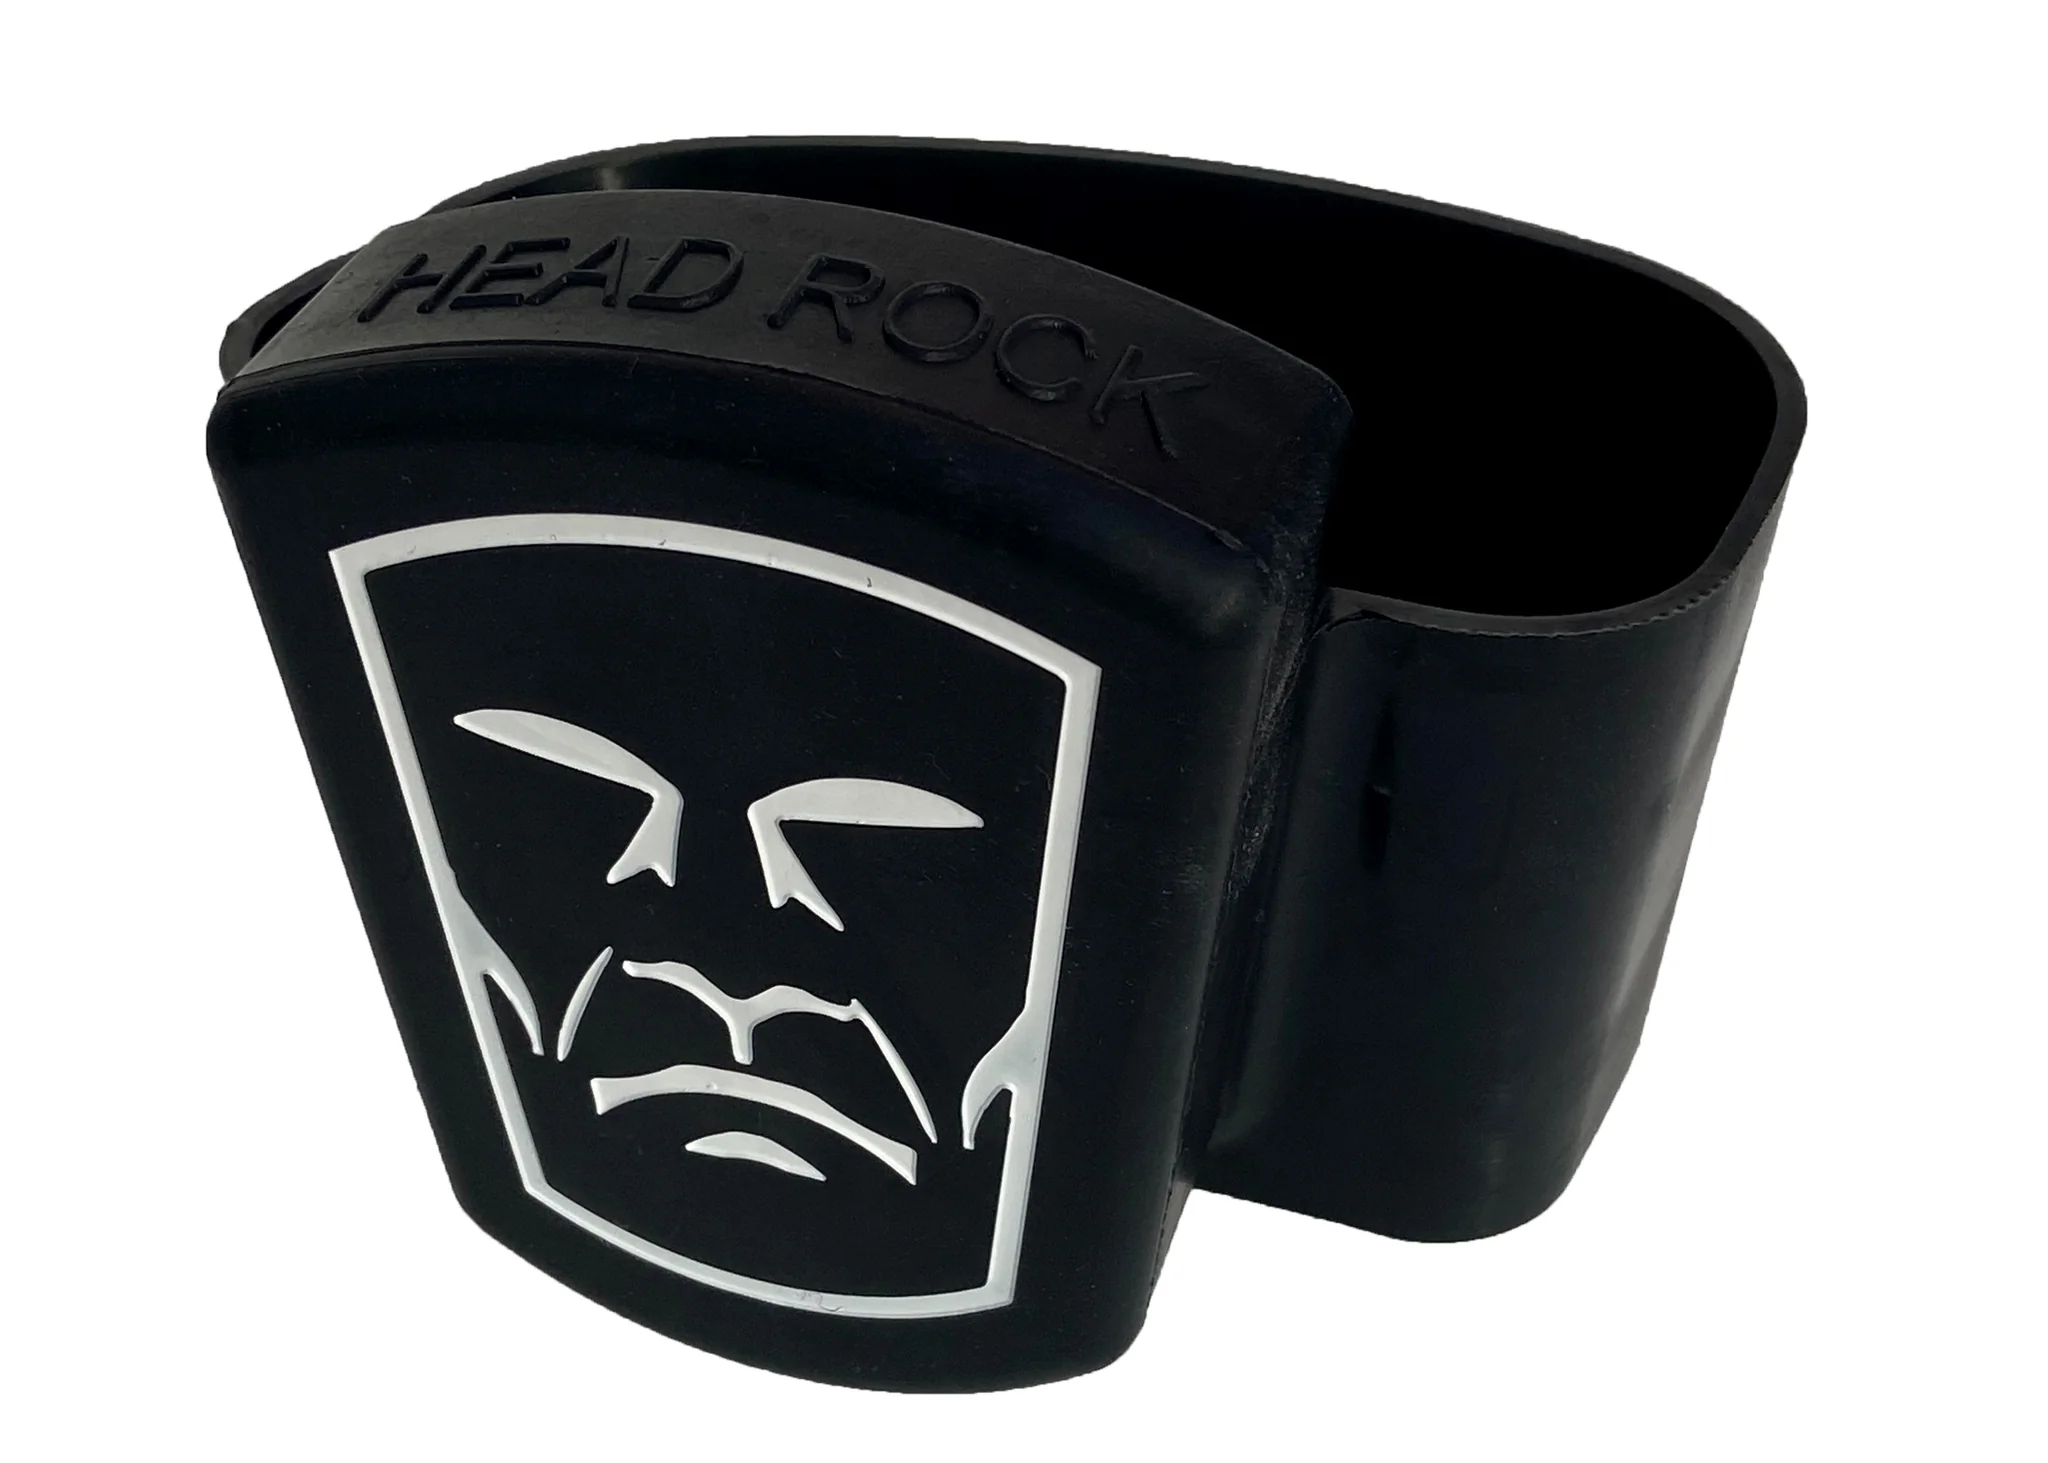 8 oz. Head Rock Lacrosse Training Weight – Head Rock Lacrosse, Inc.